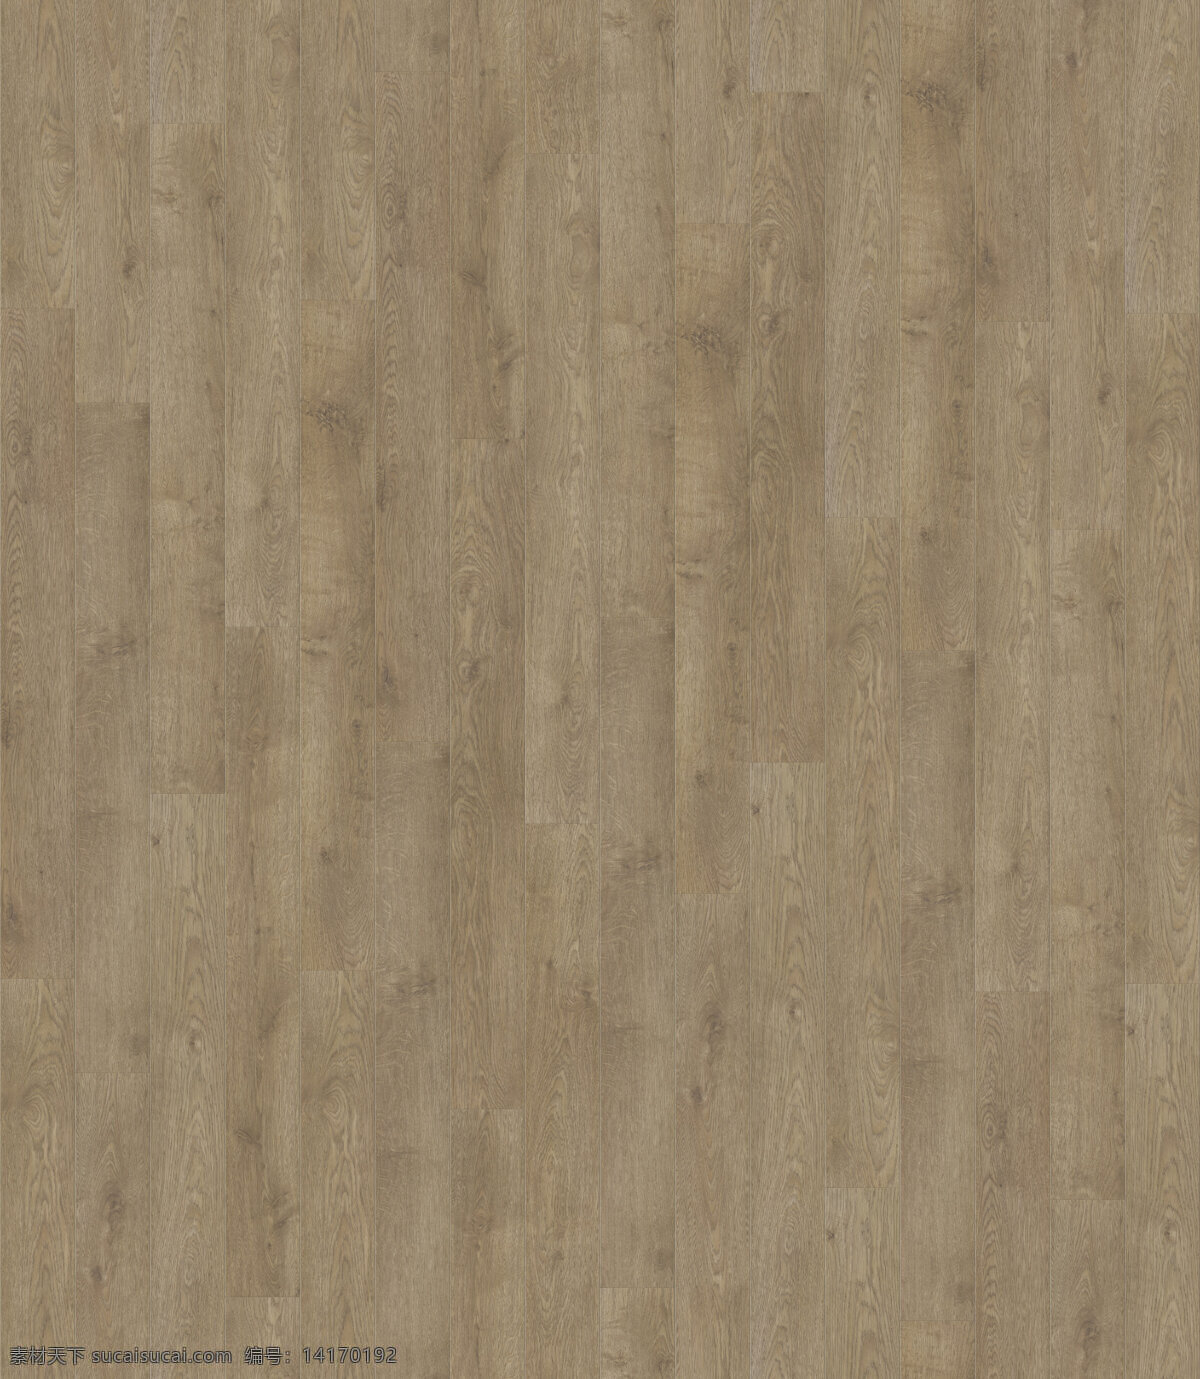 浅色 胡桃 木地板 贴图 室内地板 浅黄色地板 贴图材质 3d贴图 胡桃木贴图 现代木地板 中式现代图片 凹凸通道模型